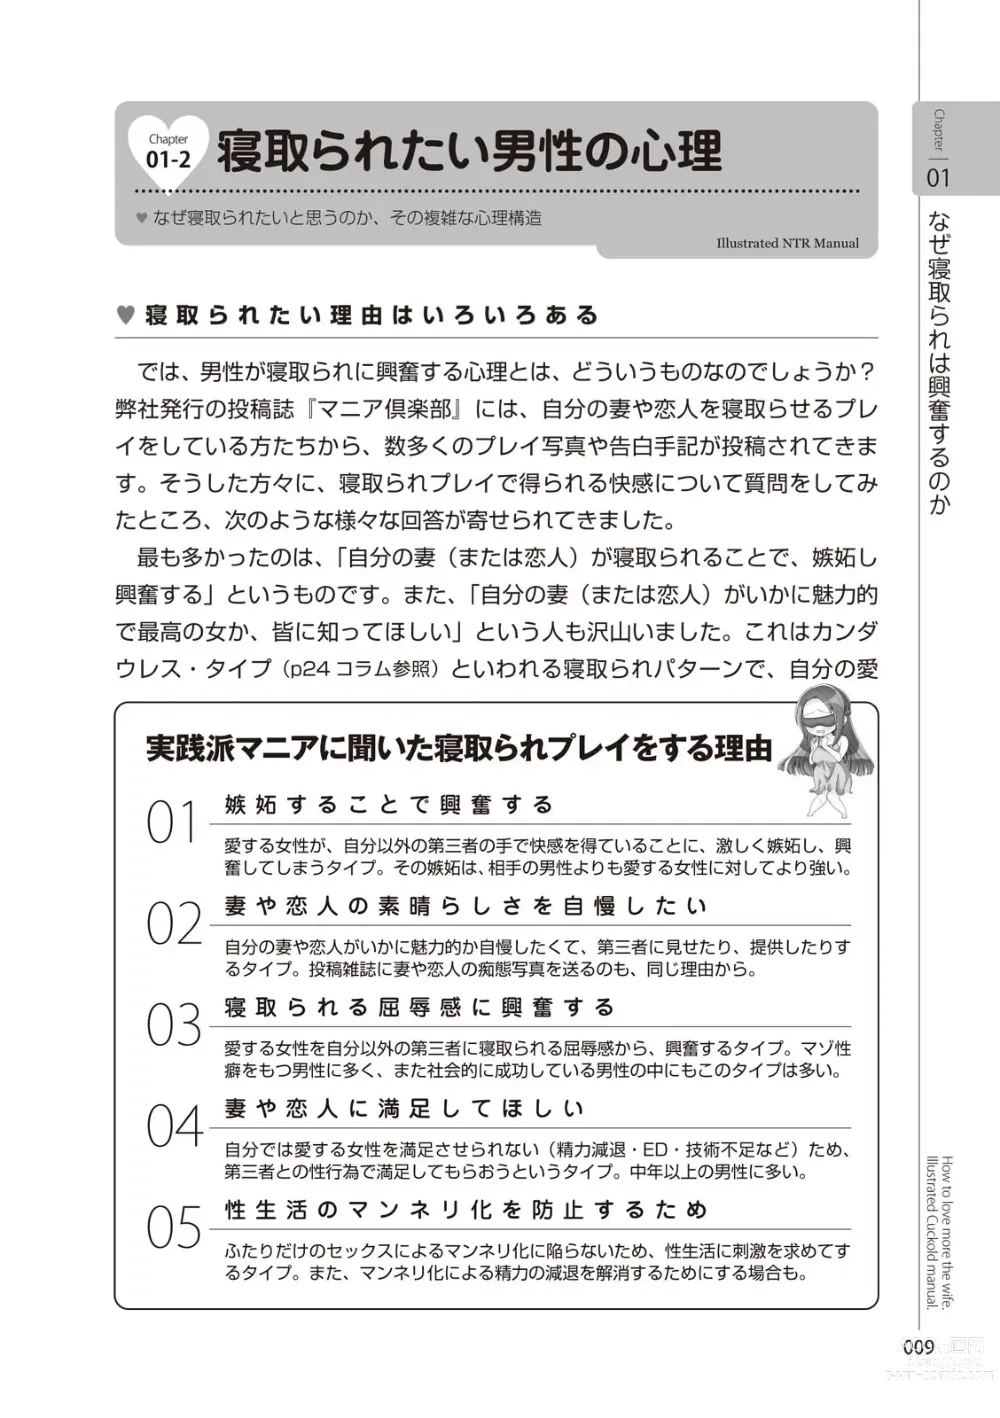 Page 11 of manga Zusetsu NTR Manual